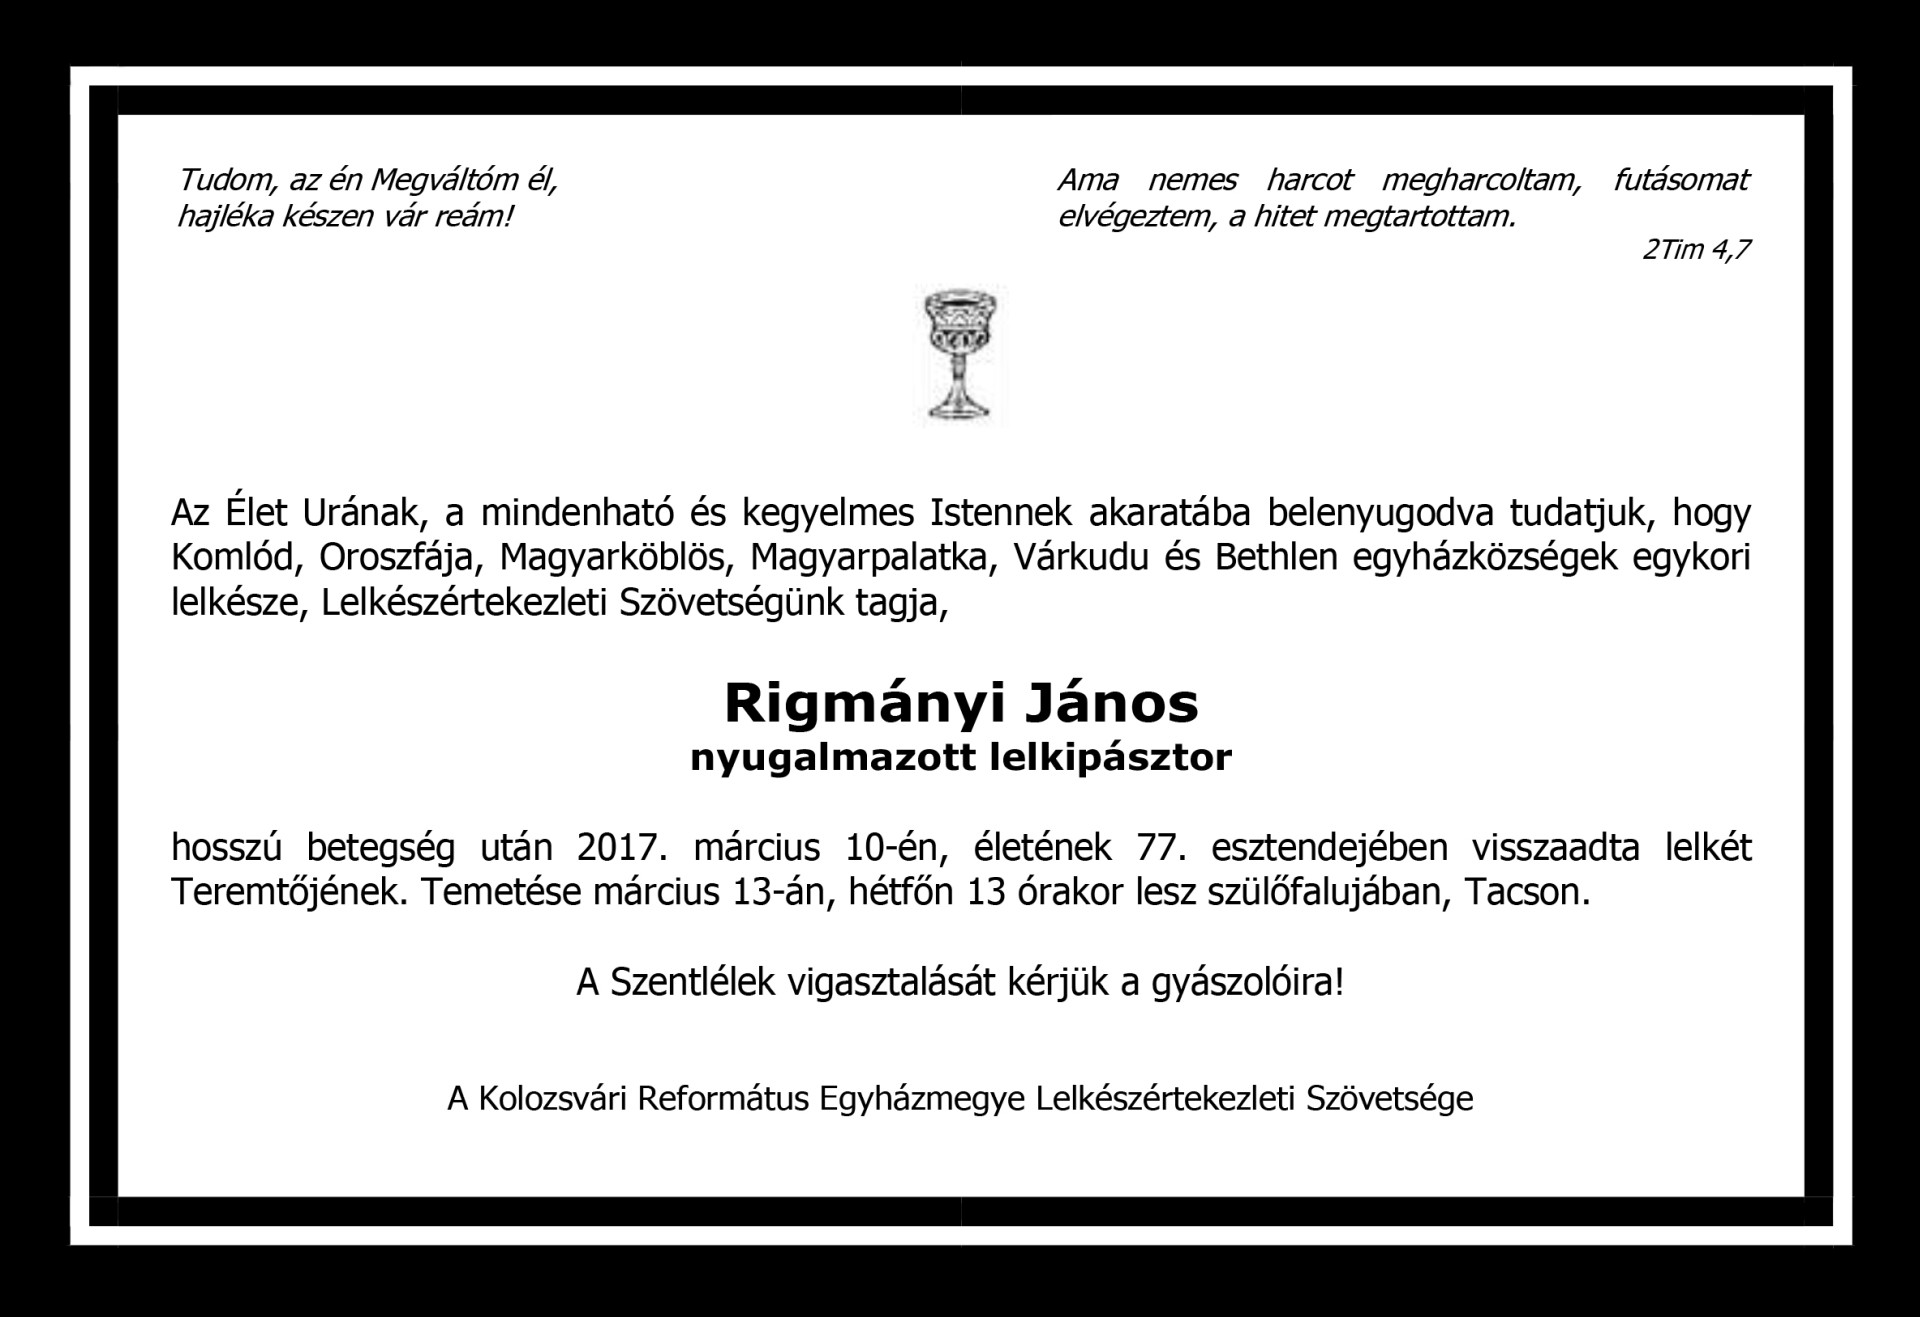 Gyászjelentés - Rigmányi János